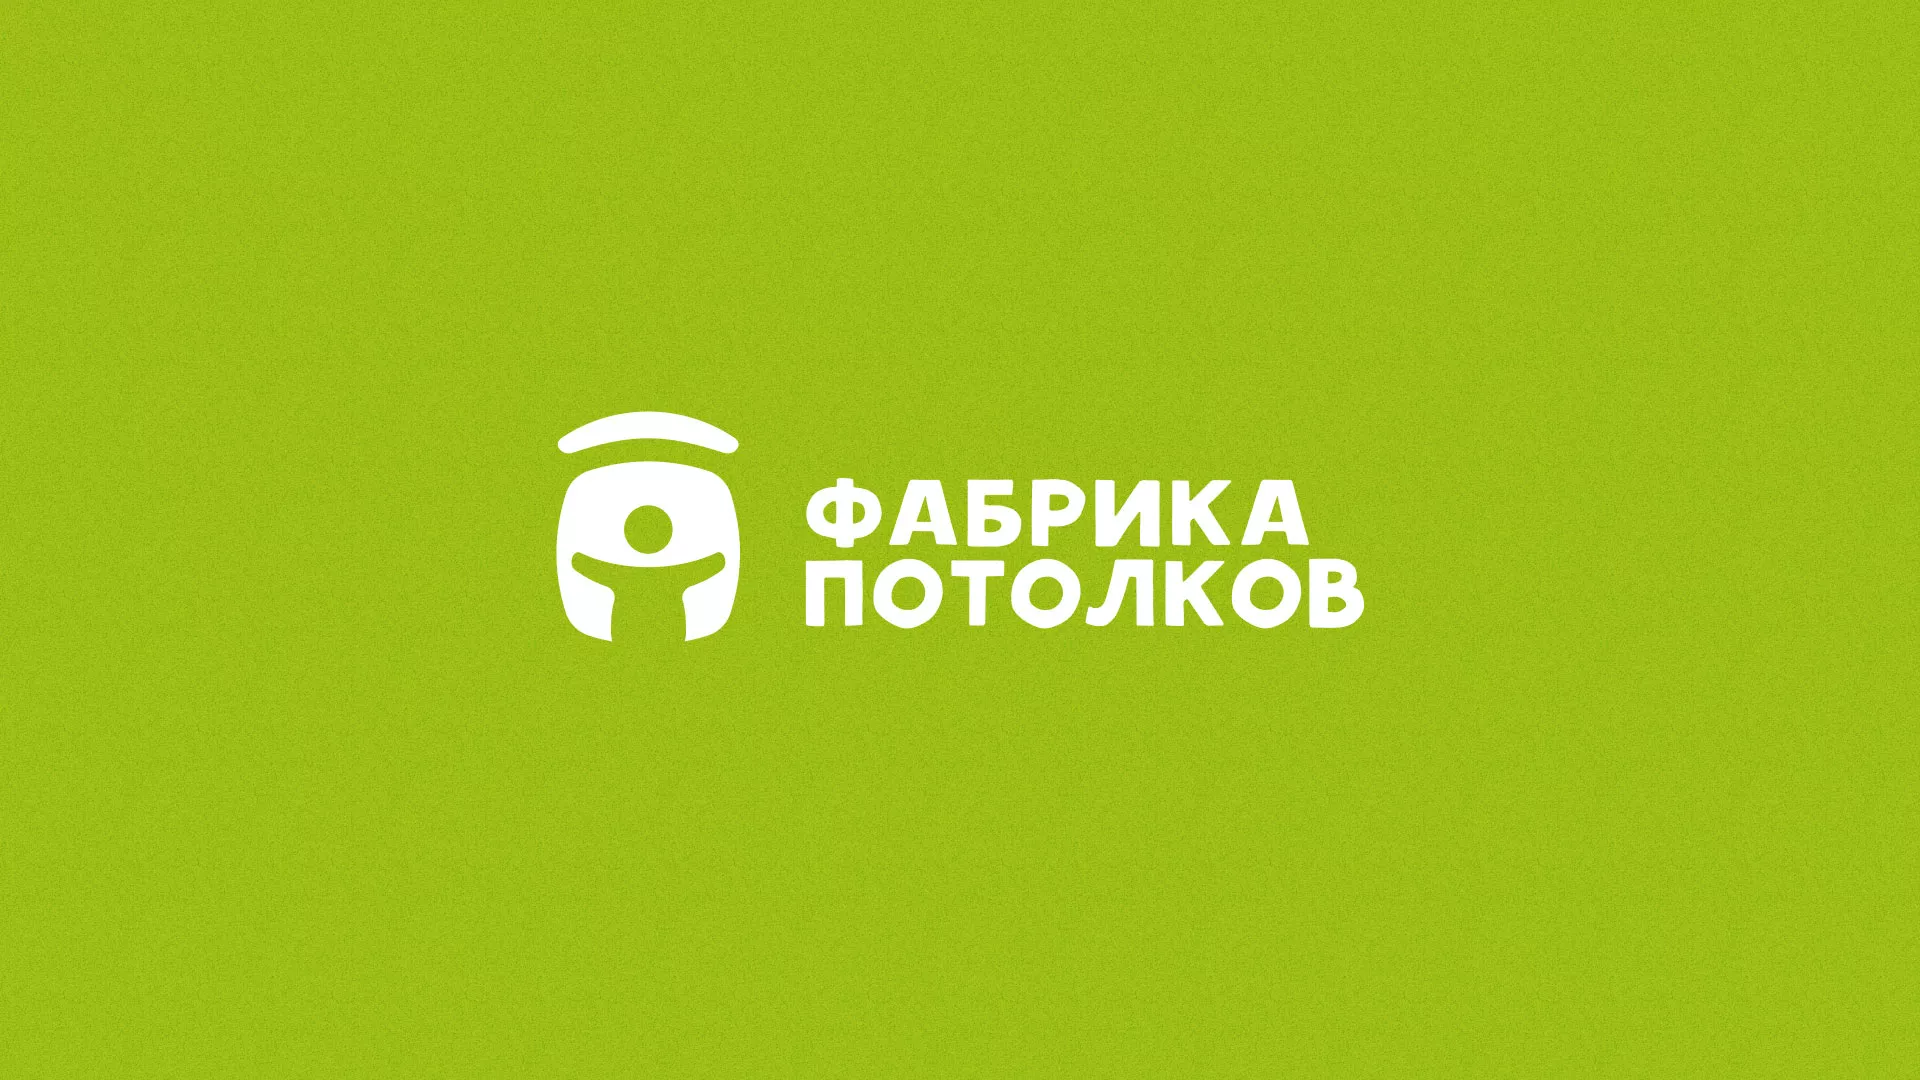 Разработка логотипа для производства натяжных потолков в Болгаре